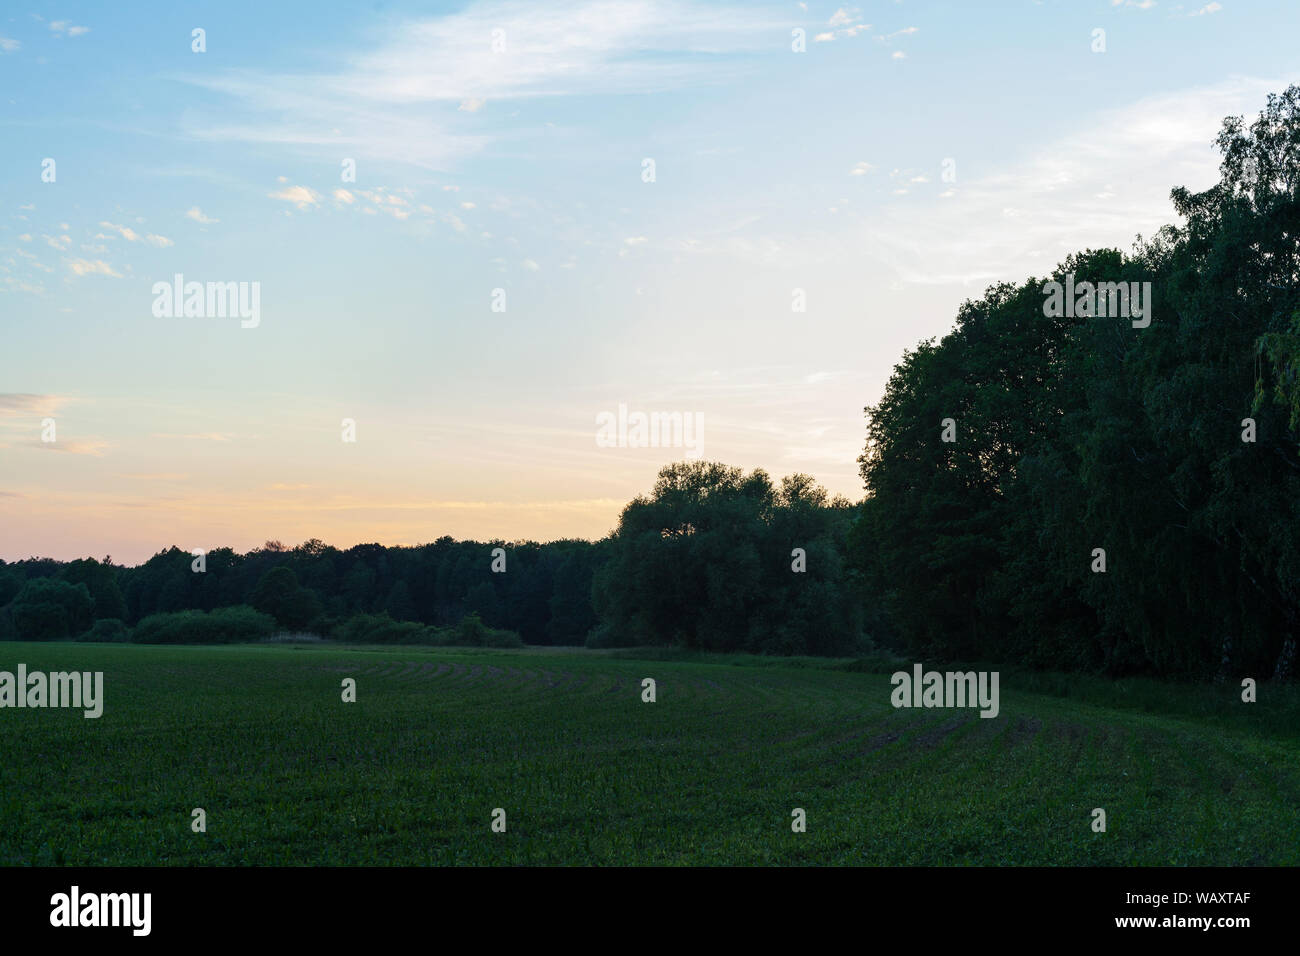 Abendstimmung auf einem Feld mit Bäumen und Gras. Schönes Licht und Farben copyspace Stockfoto